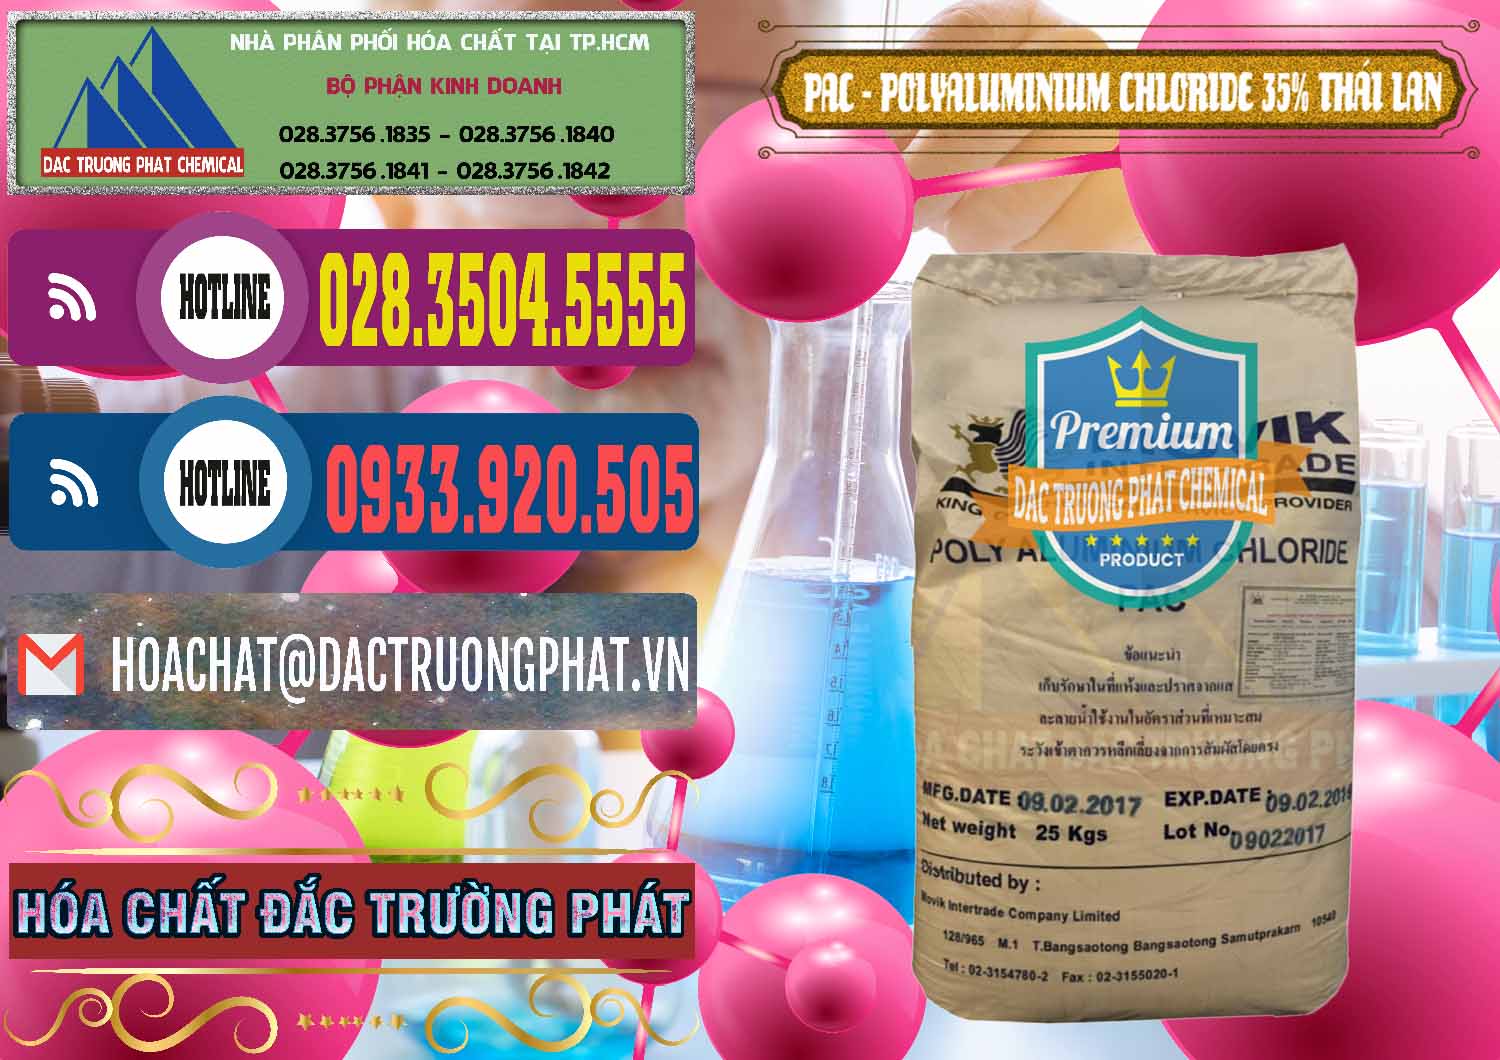 Chuyên bán ( cung ứng ) PAC - Polyaluminium Chloride 35% Thái Lan Thailand - 0470 - Cty chuyên nhập khẩu và phân phối hóa chất tại TP.HCM - muabanhoachat.com.vn